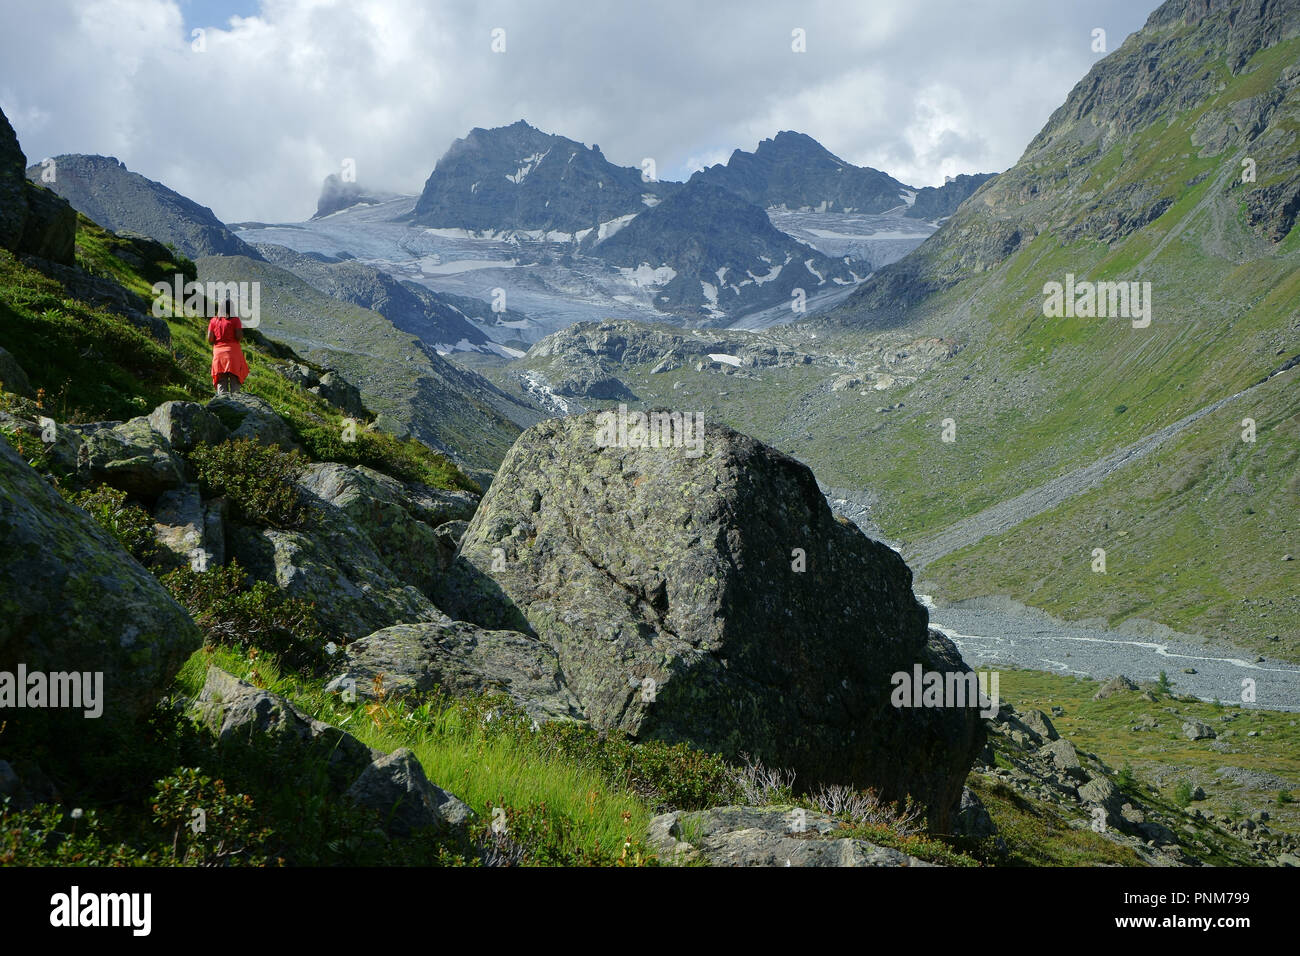 Wandern im oberen Jamta mit Jamtalferner - Jamtalglacier in zurück, Tirol, Österreich Stockfoto